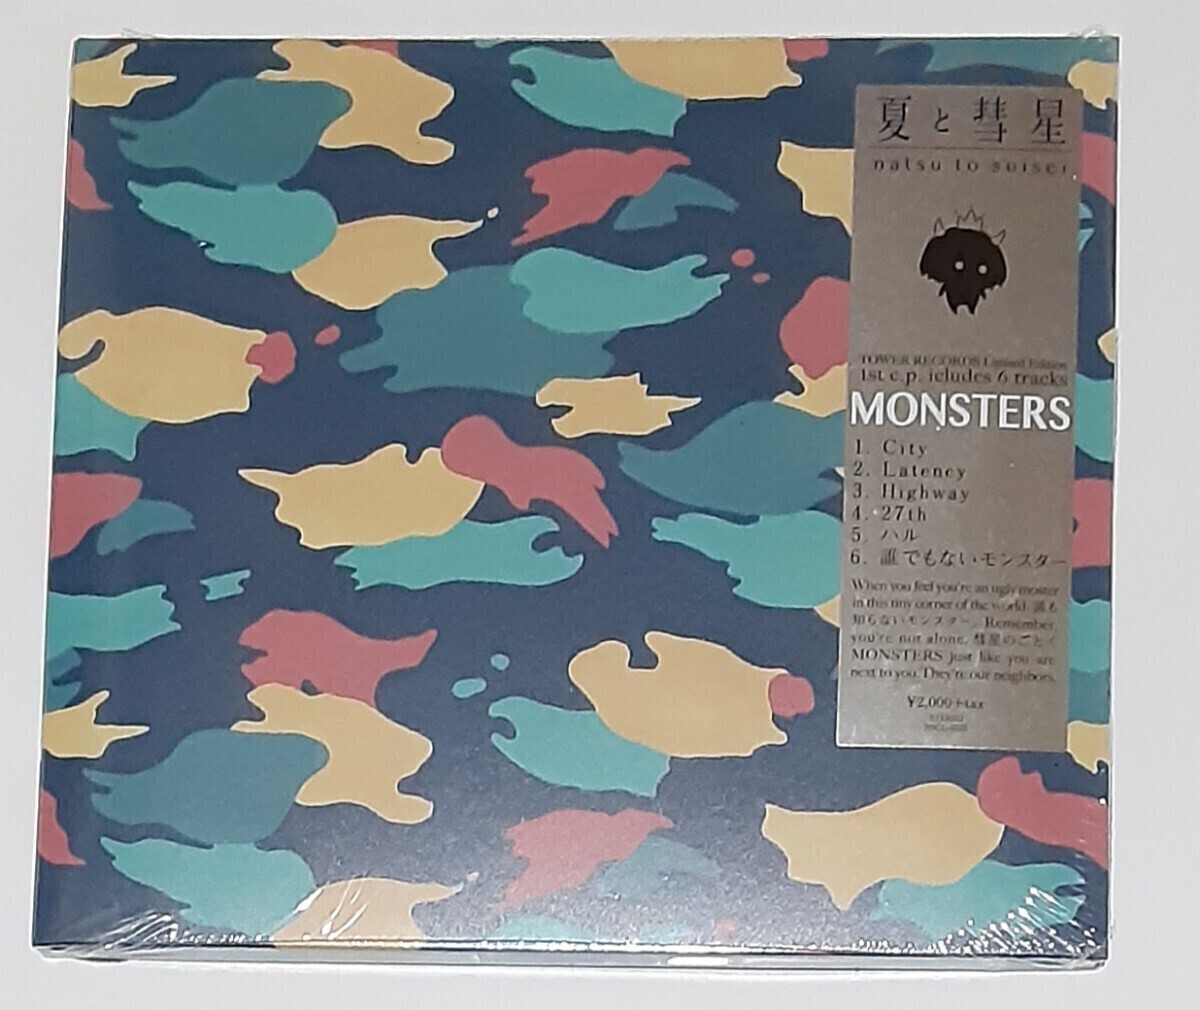 【タワレコ限定盤】夏と彗星/ MONSTER 夏代孝明